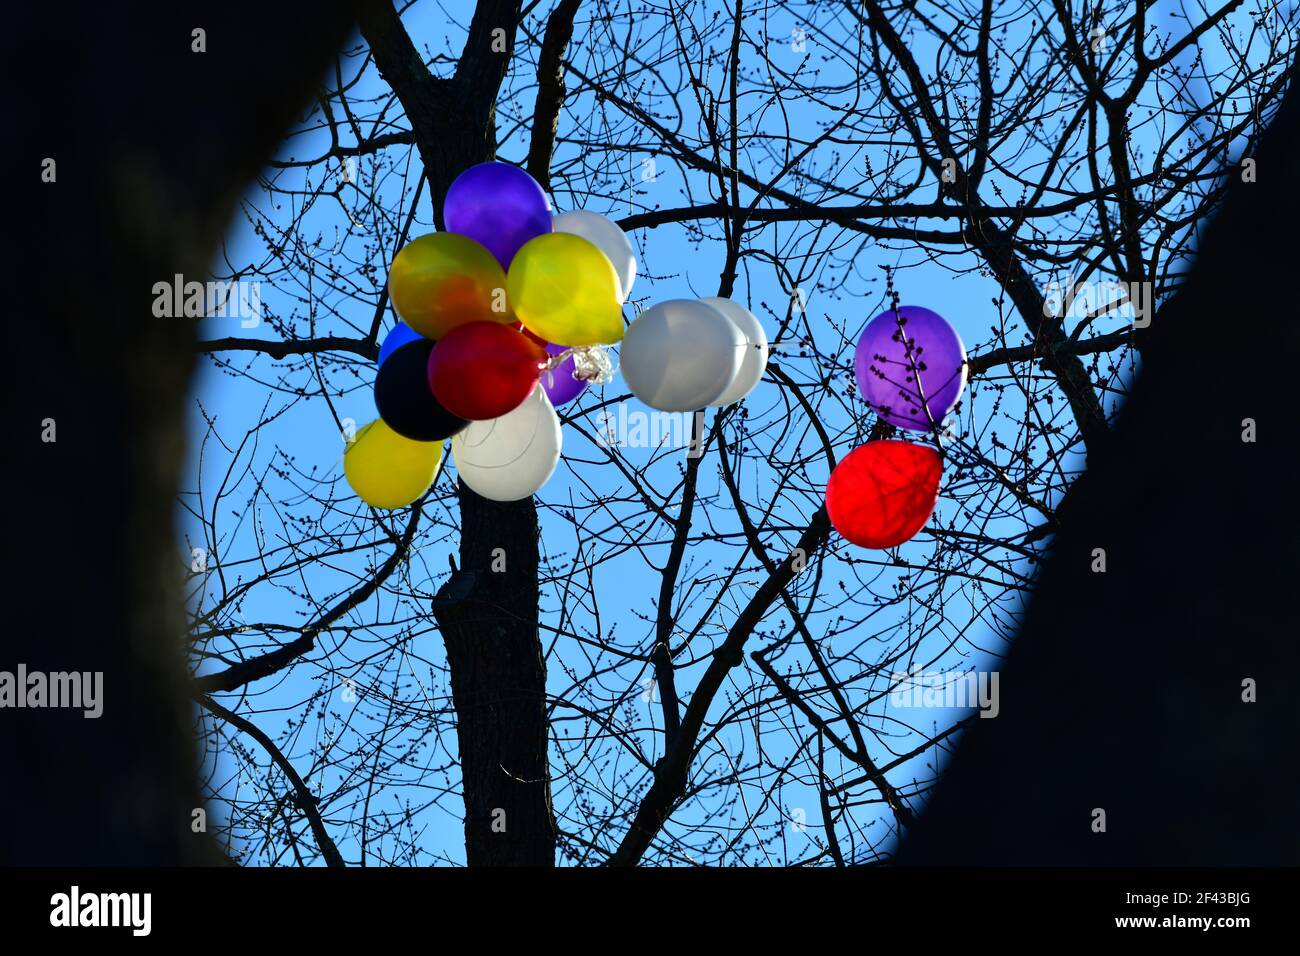 Ein großer Haufen von bunten Ballons ist in einem blattlosen großen Baum mit einem klaren blauen Himmel Hintergrund stecken. Stockfoto